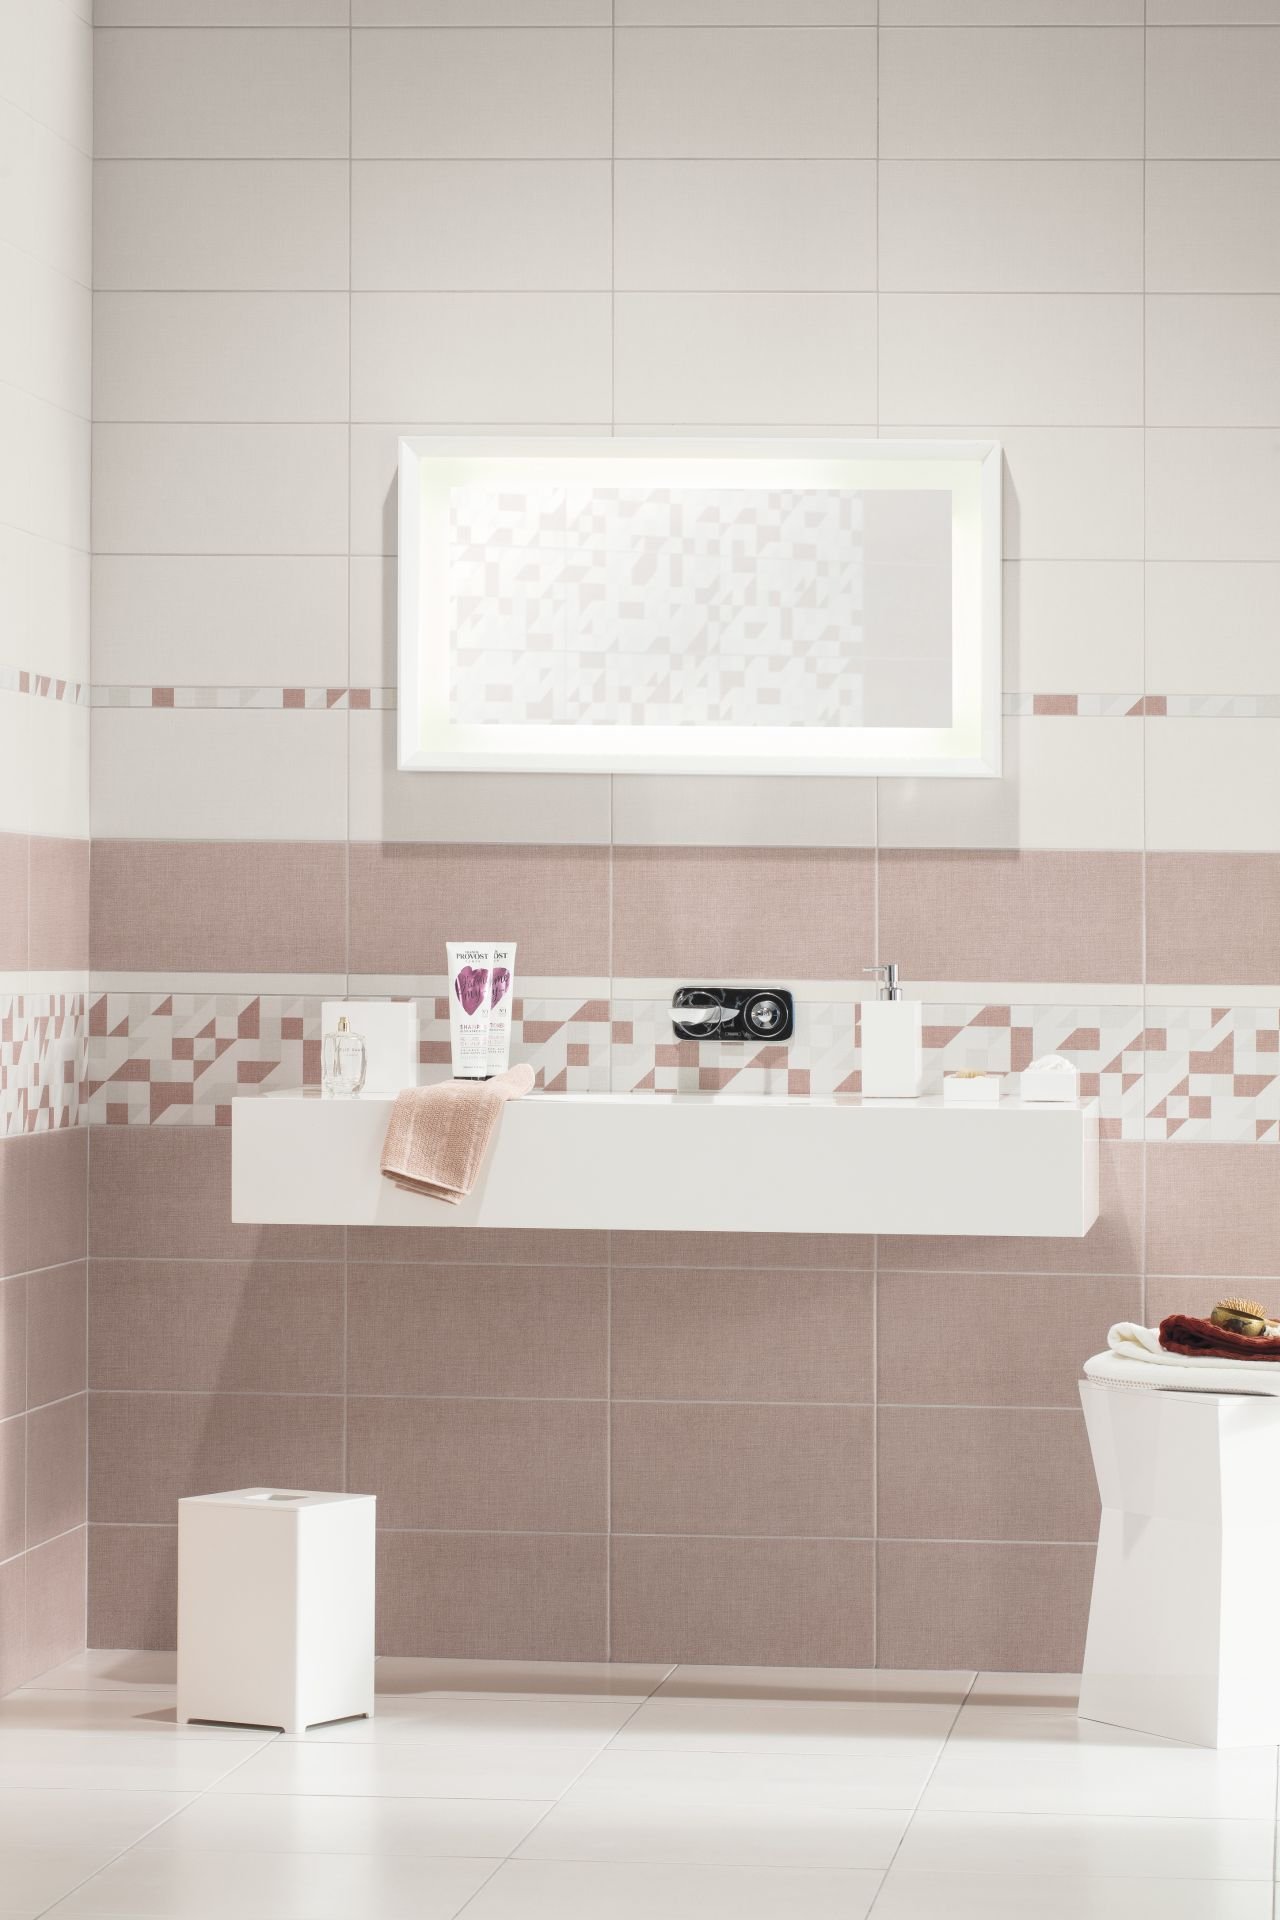 #RAKO #Tess #Obklady a dlažby #Koupelna #Klasický styl #bílá #růžová #Matný obklad #Střední formát #350 - 500 Kč/m2 #new 